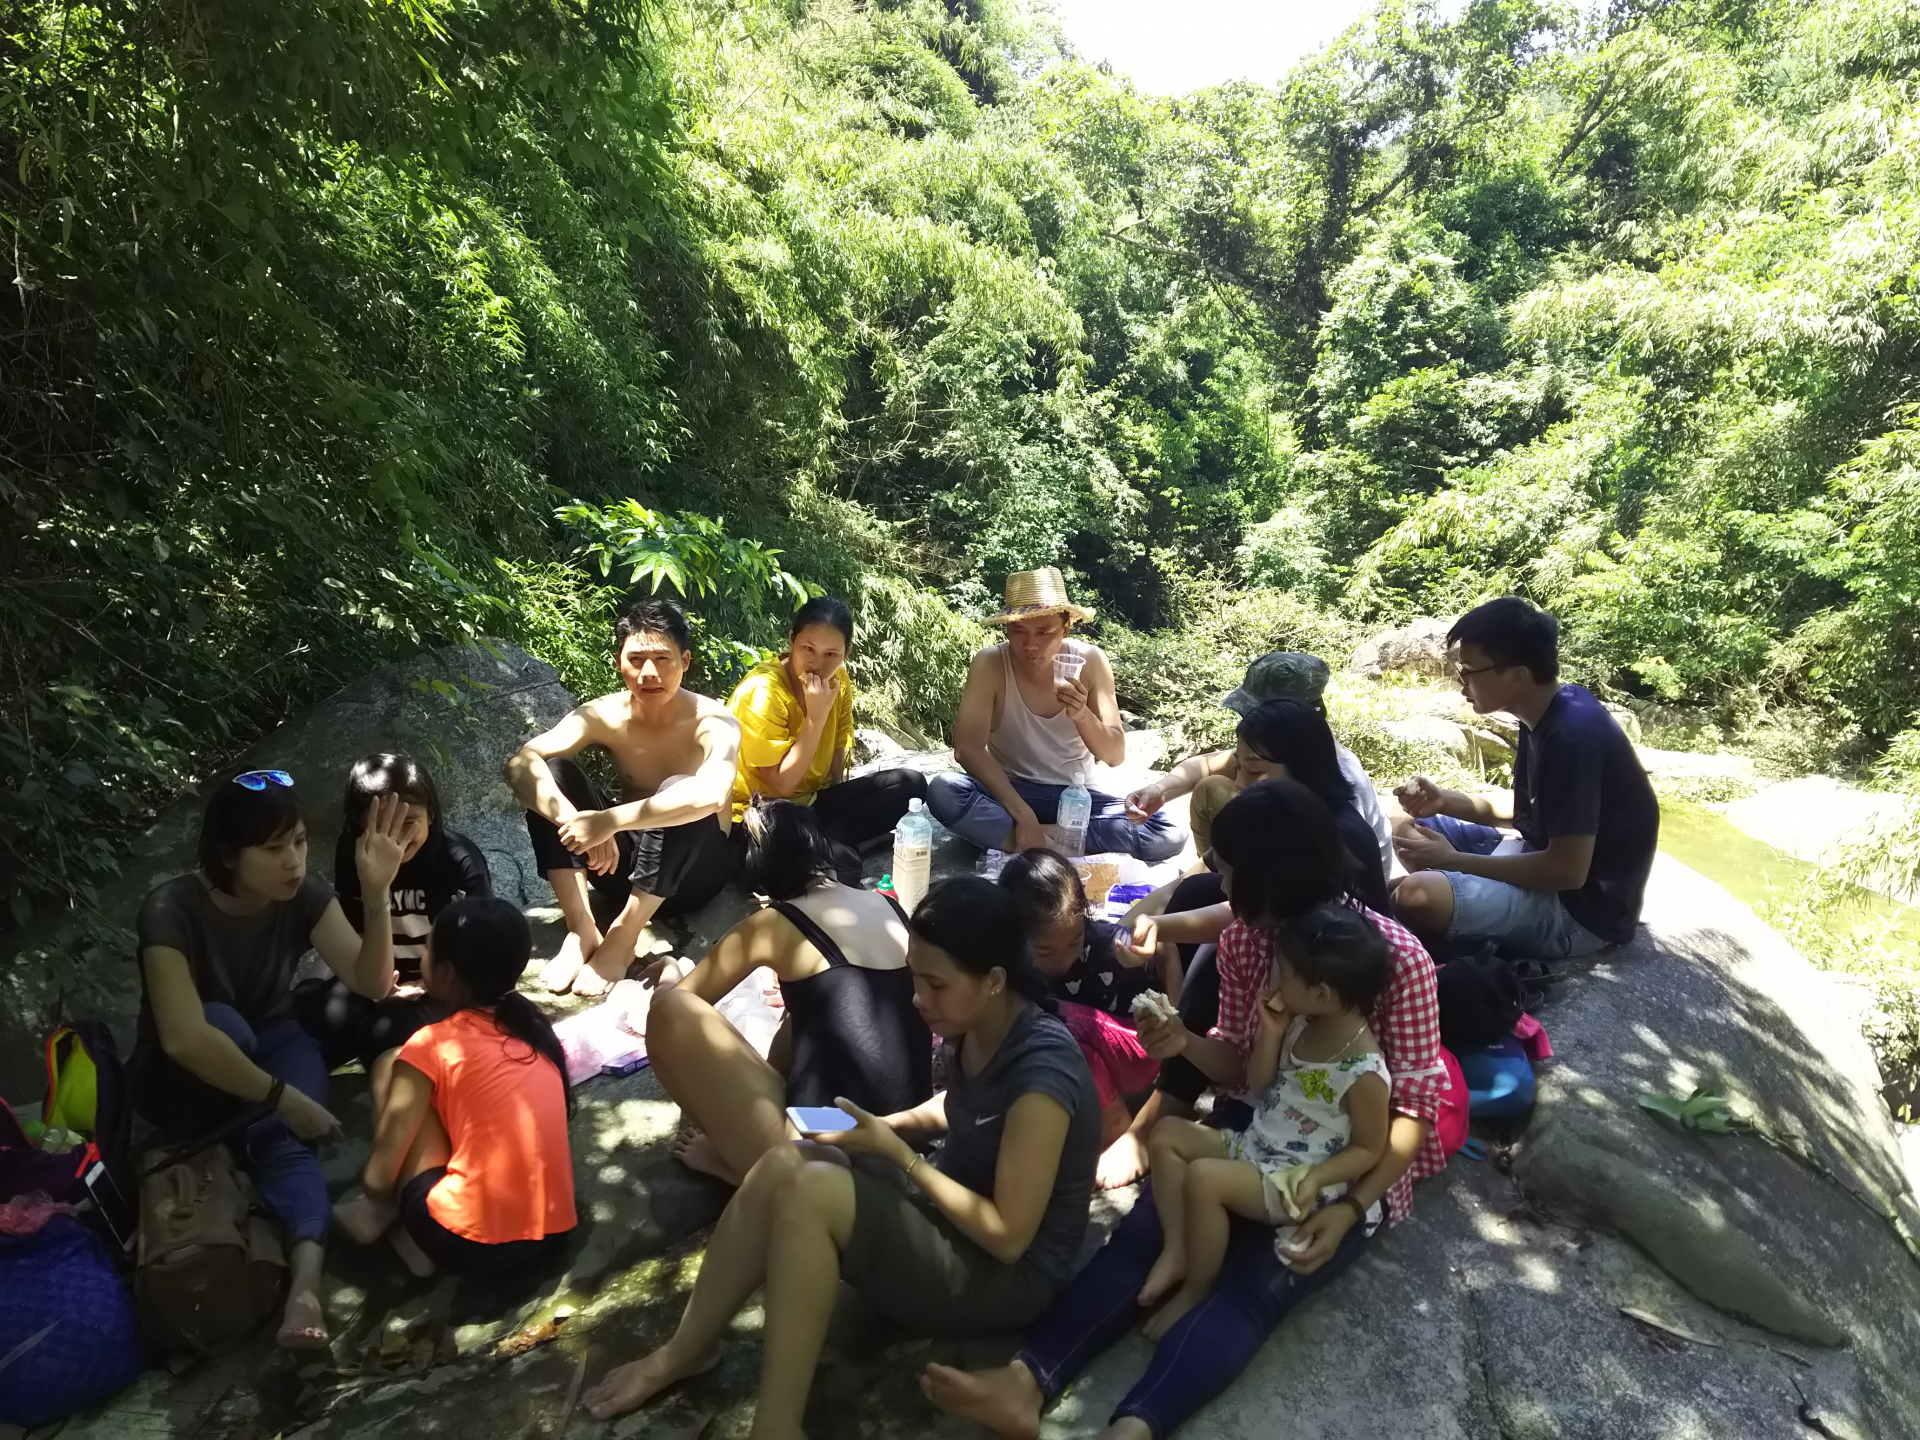 Sau khi hoà mình dưới dòng suối, mọi người cùng nhau ăn trưa trên một phiến đá lớn. Tất cả đồ ăn đều được chuẩn bị sẵn từ nhà vì mọi người không được phép sử dụng lửa để nấu ăn trong rừng.